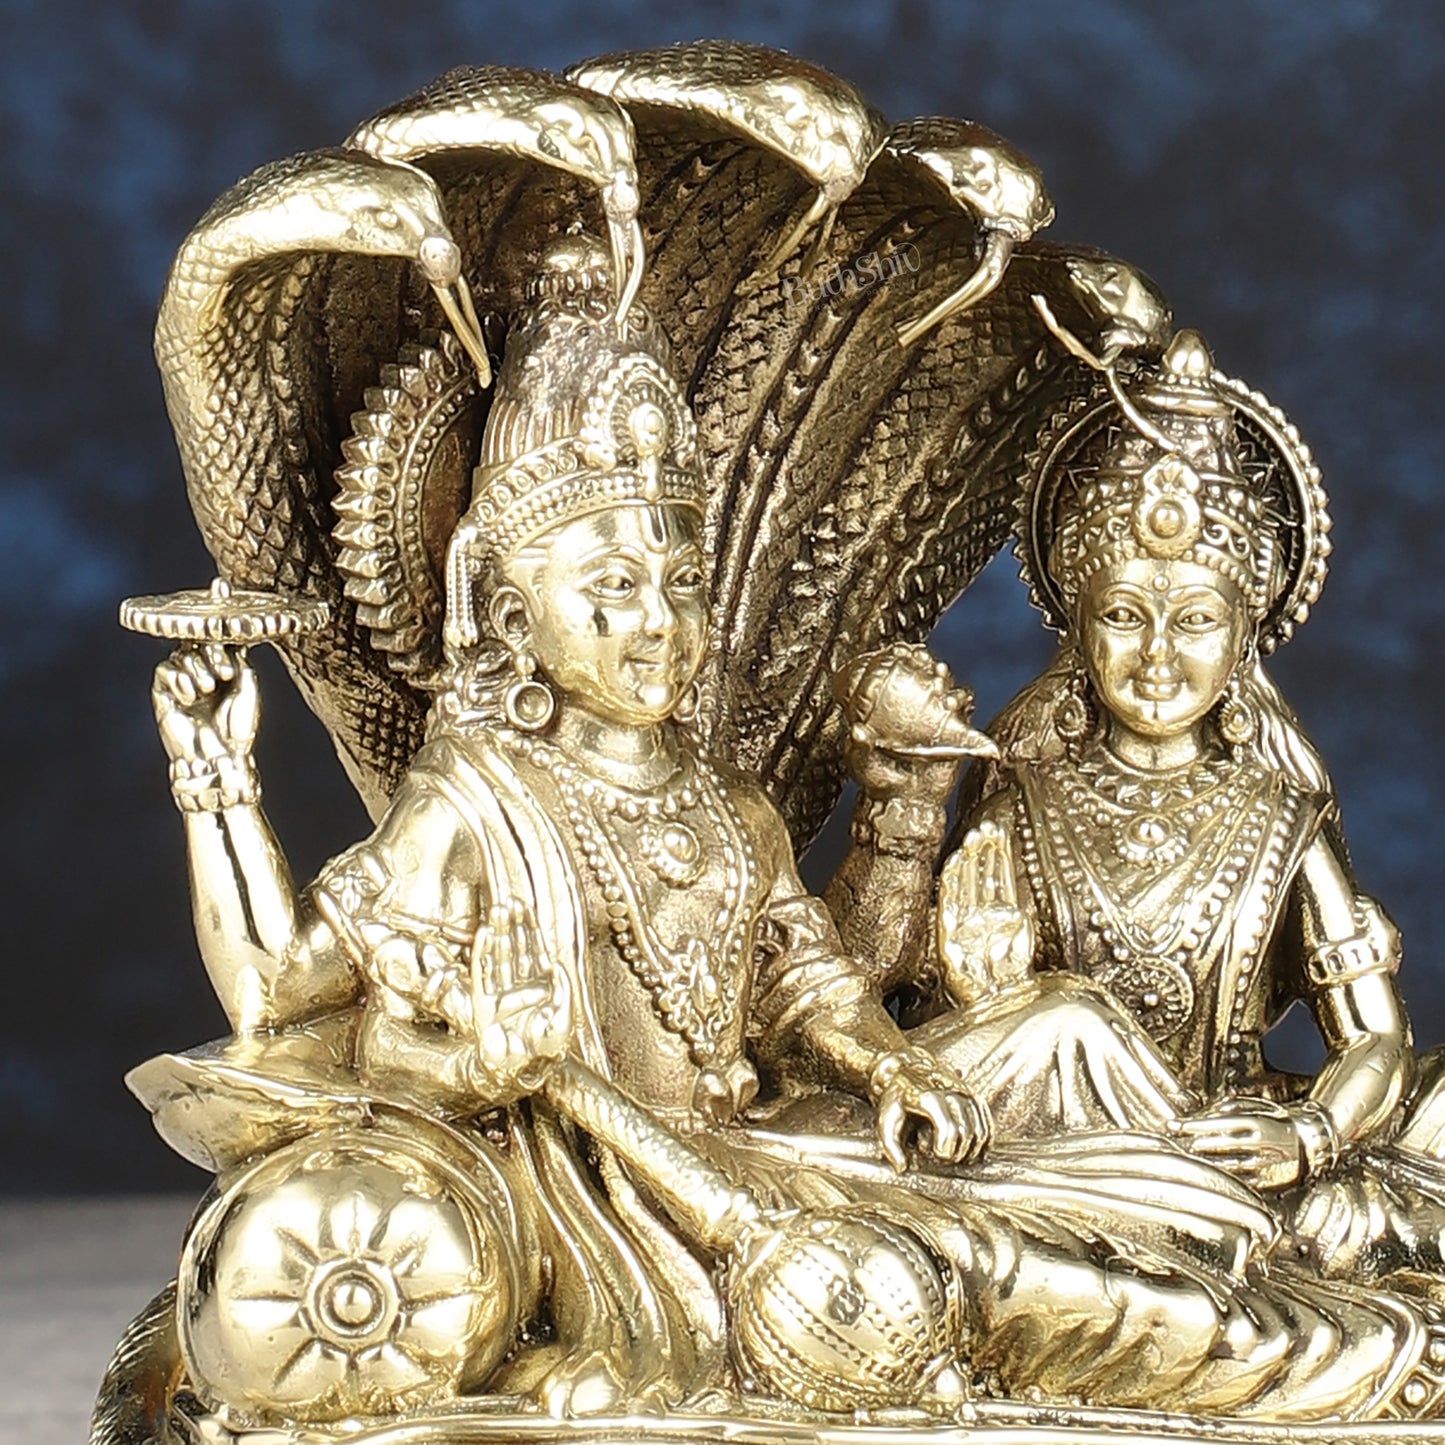 Superfine Brass Lakshmi Narayana Vishnu Idol - 5.5 inch